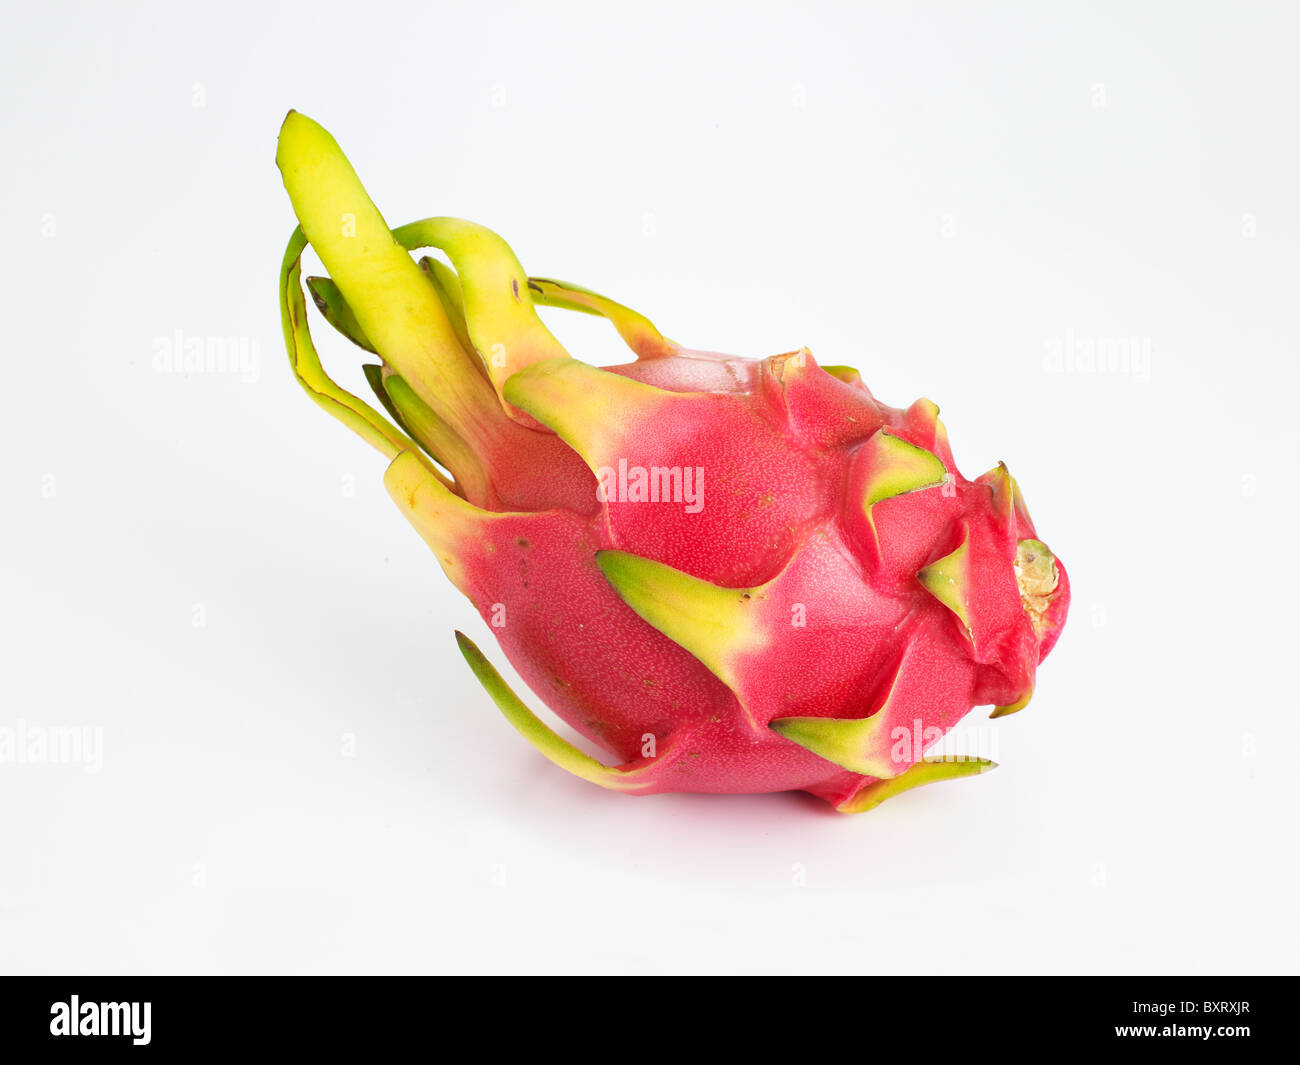 Dragon fruit (pitaya) on white background Stock Photo